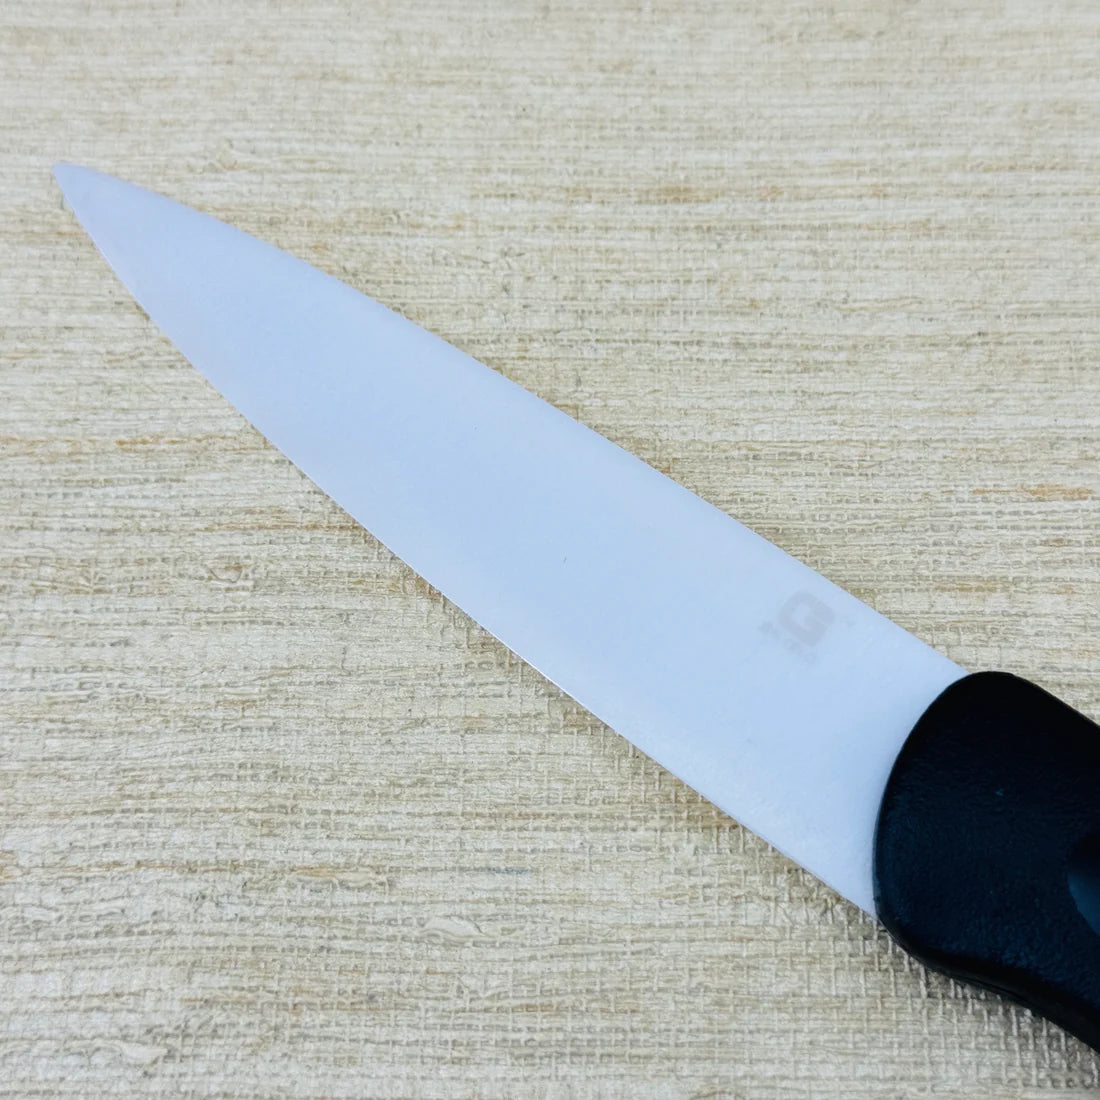 Gelo Ceramic Power Sharp Knife | KC160